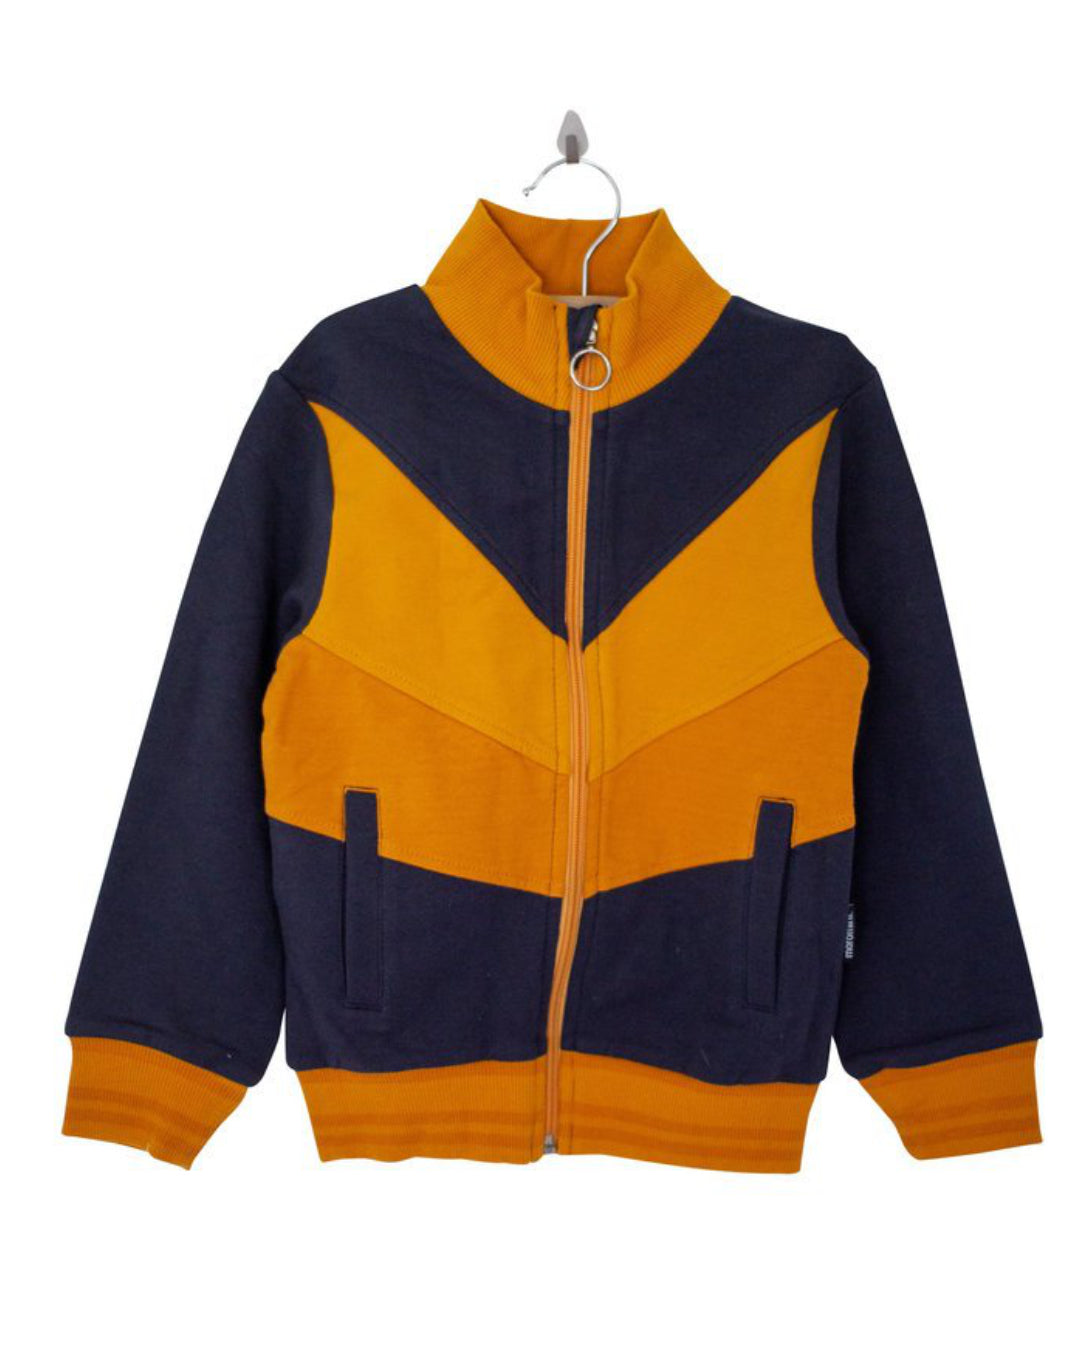 Retro Jacke aus Baumwolle mit Reißverschluss in dunkelblau orange